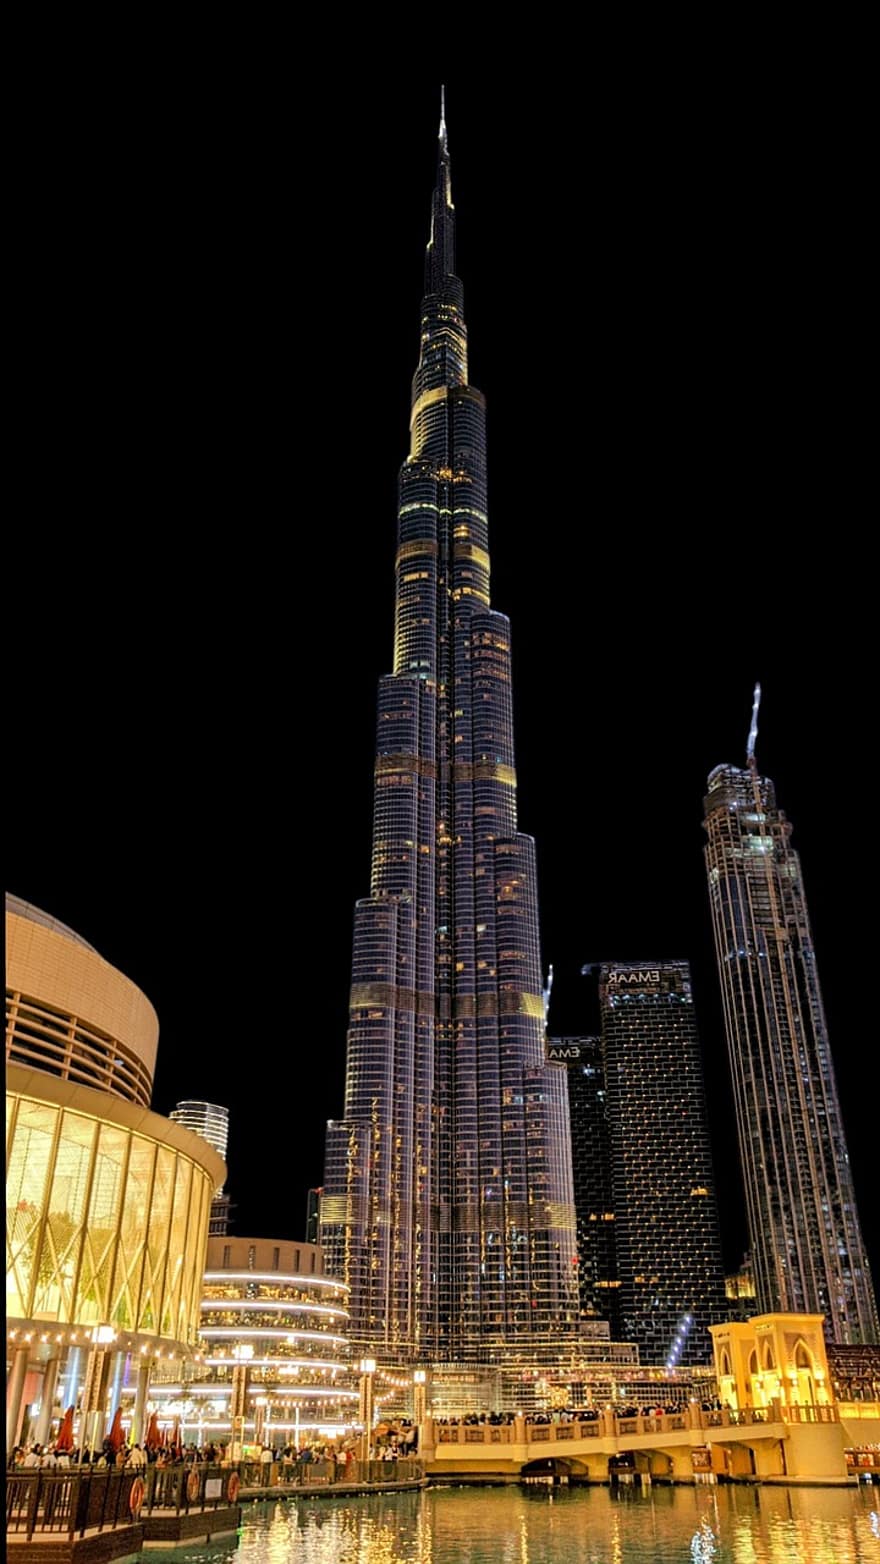 برج خليفة ، الإمارات ، هندسة معمارية ، مدينة ، الحضاري ، محافظه ، ناطحات سحاب ، ليل ، ناطحة سحاب ، مكان مشهور ، سيتي سكيب